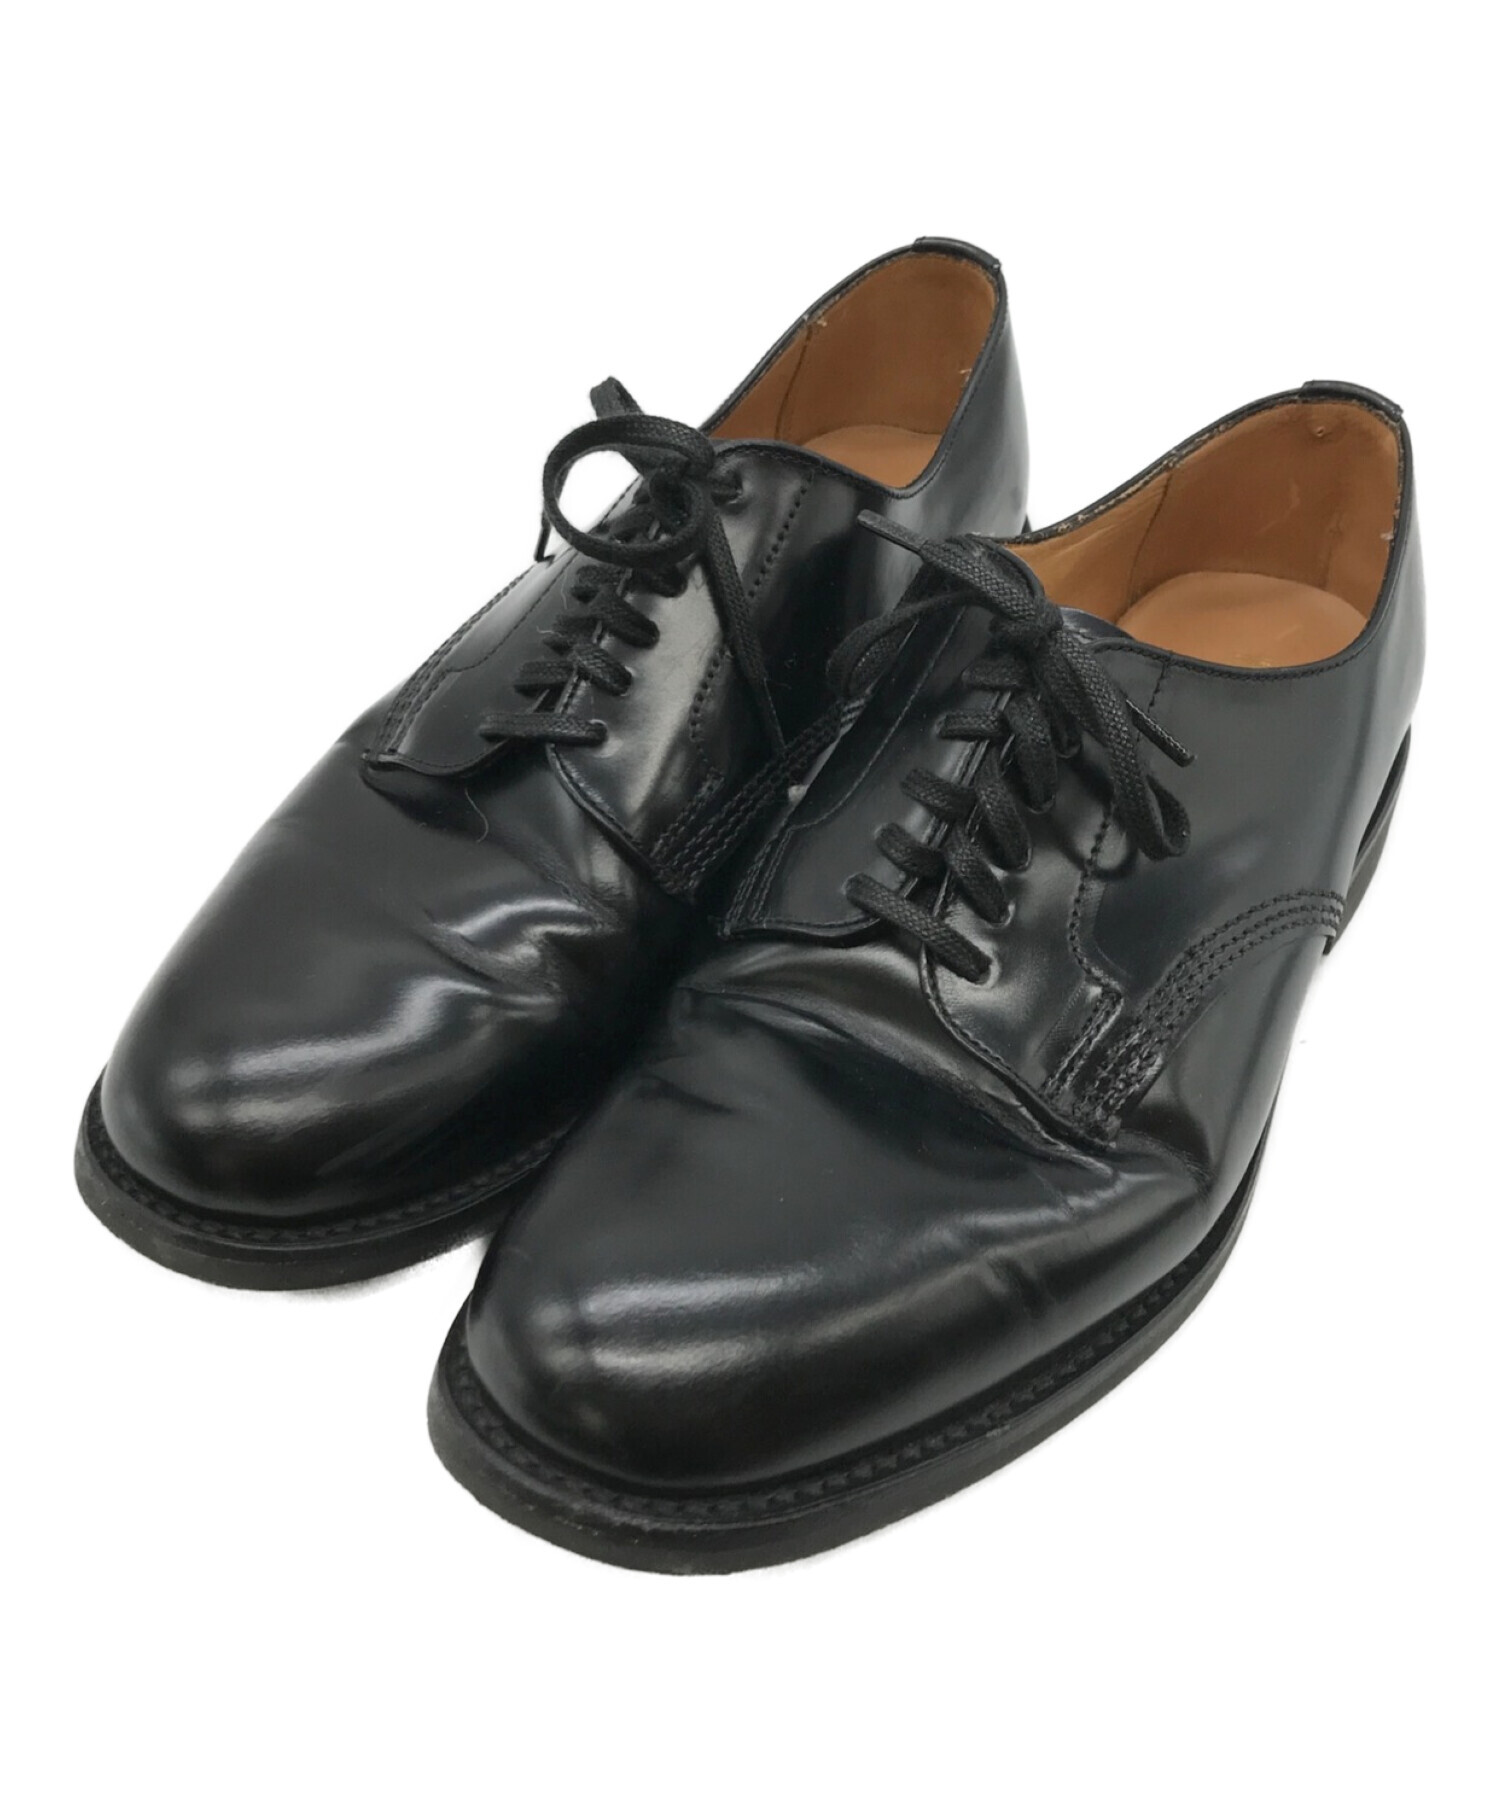 SANDERS (サンダース) Officer Shoe Polishin Leather ブラック サイズ:5 1/2